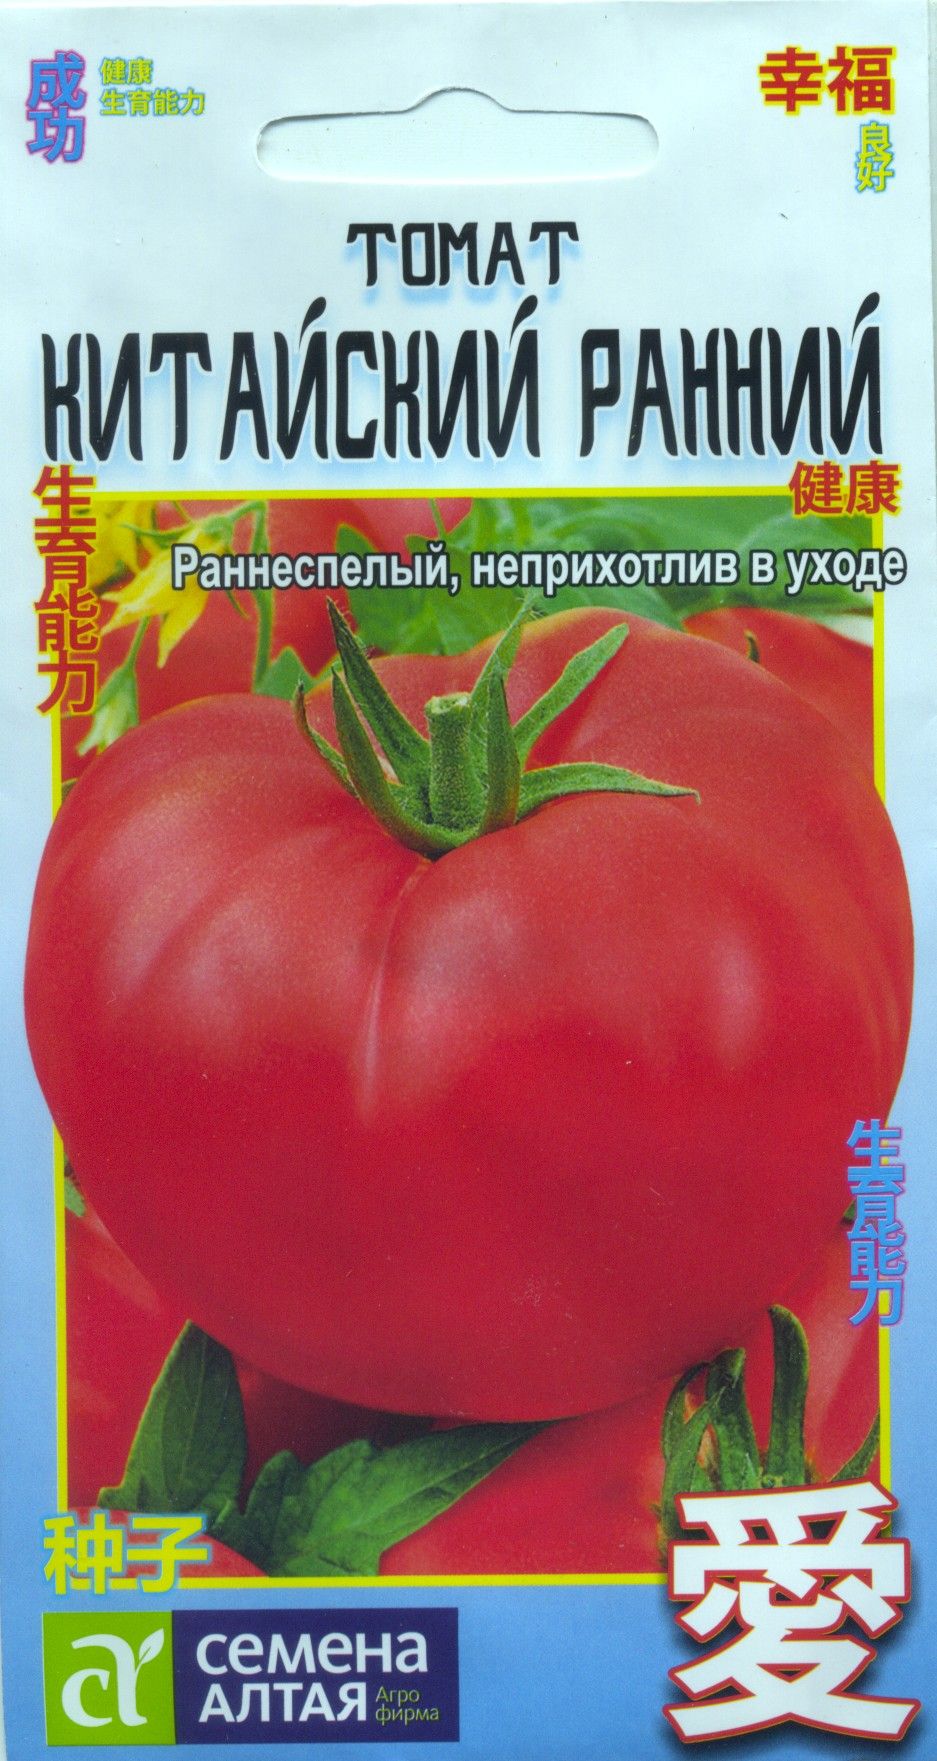 Семена Алтая томат китайский